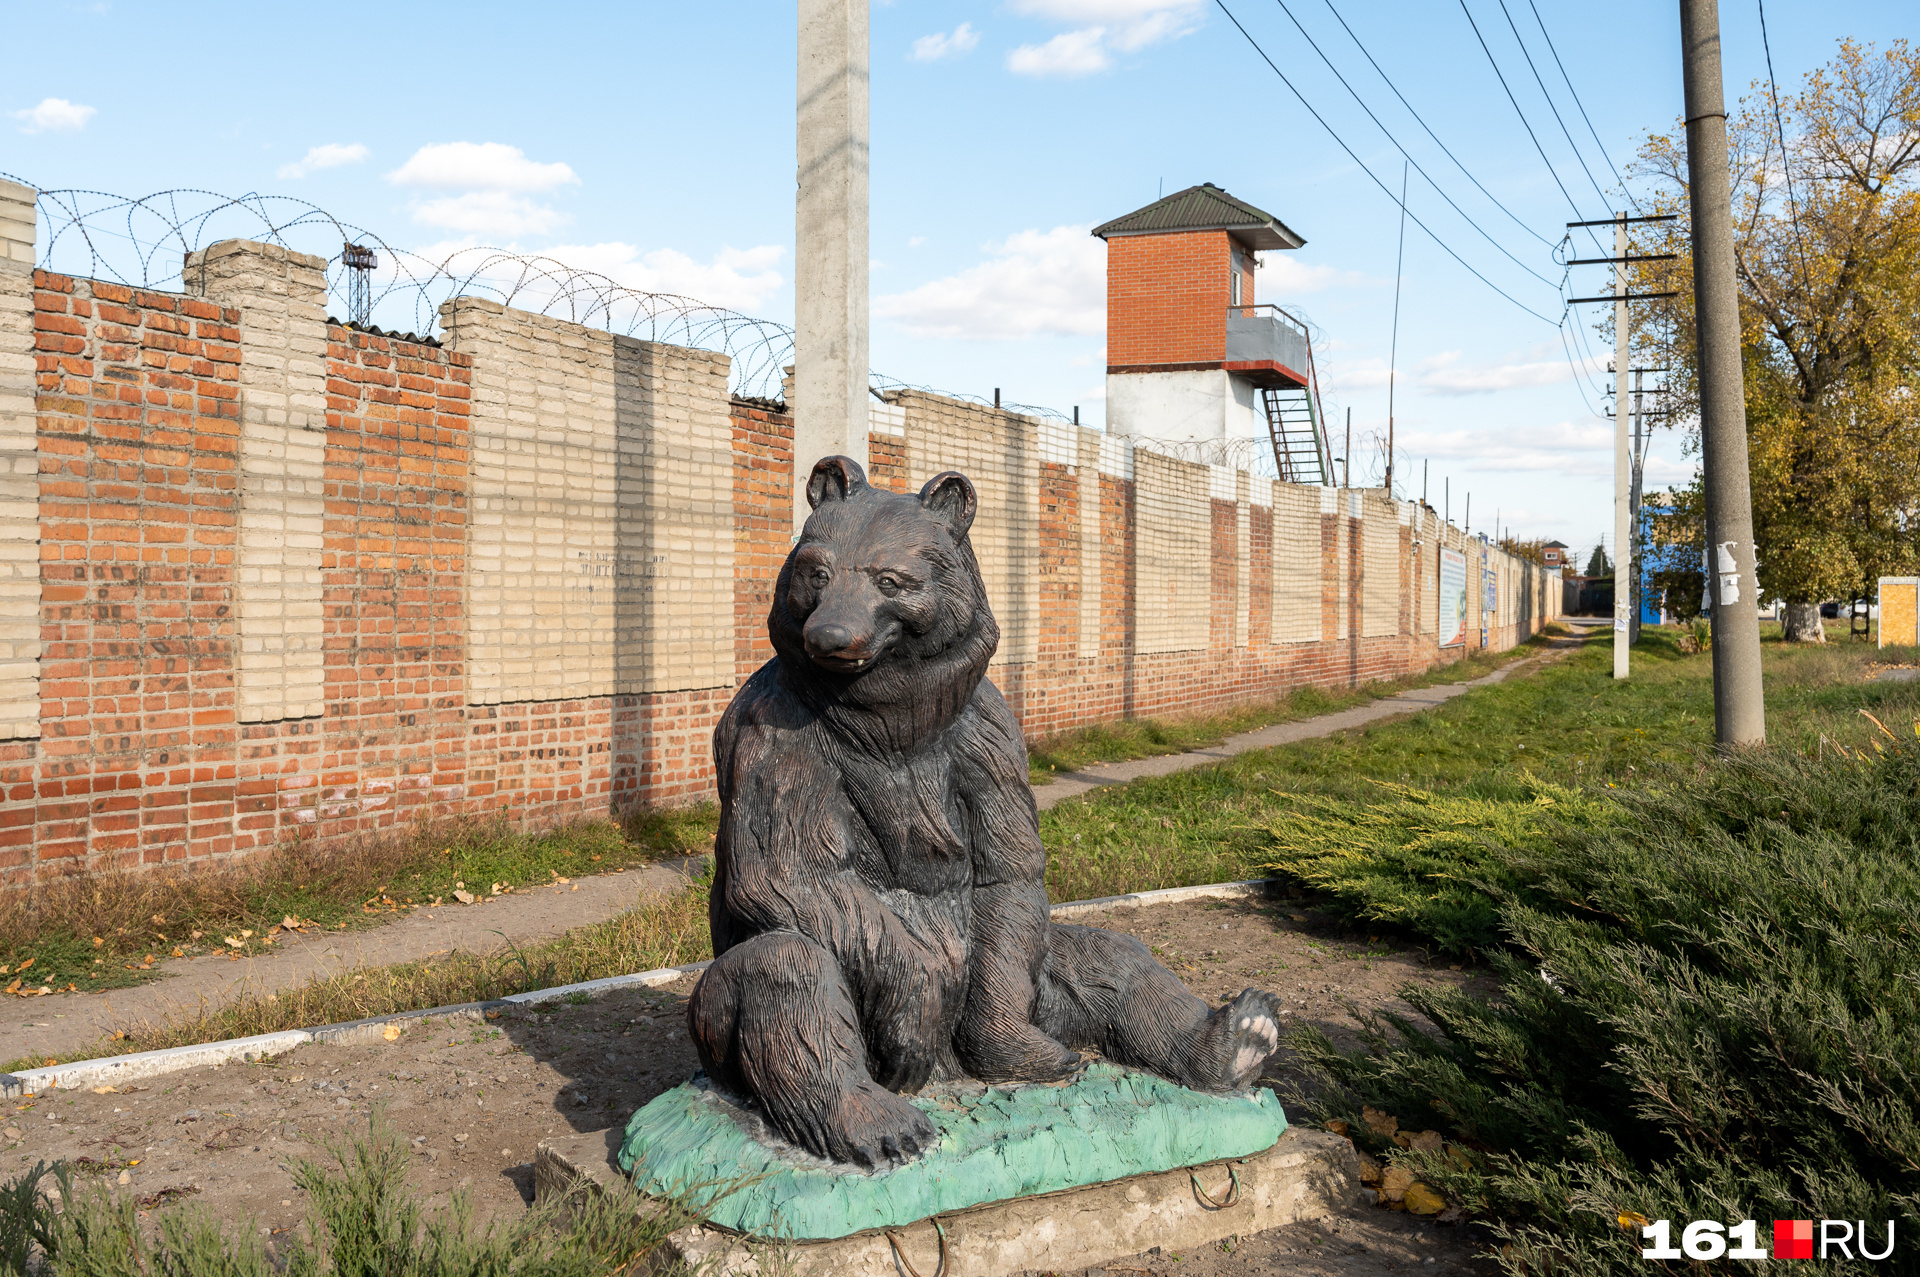 Перед ИК-15 установлен большой черный медведь